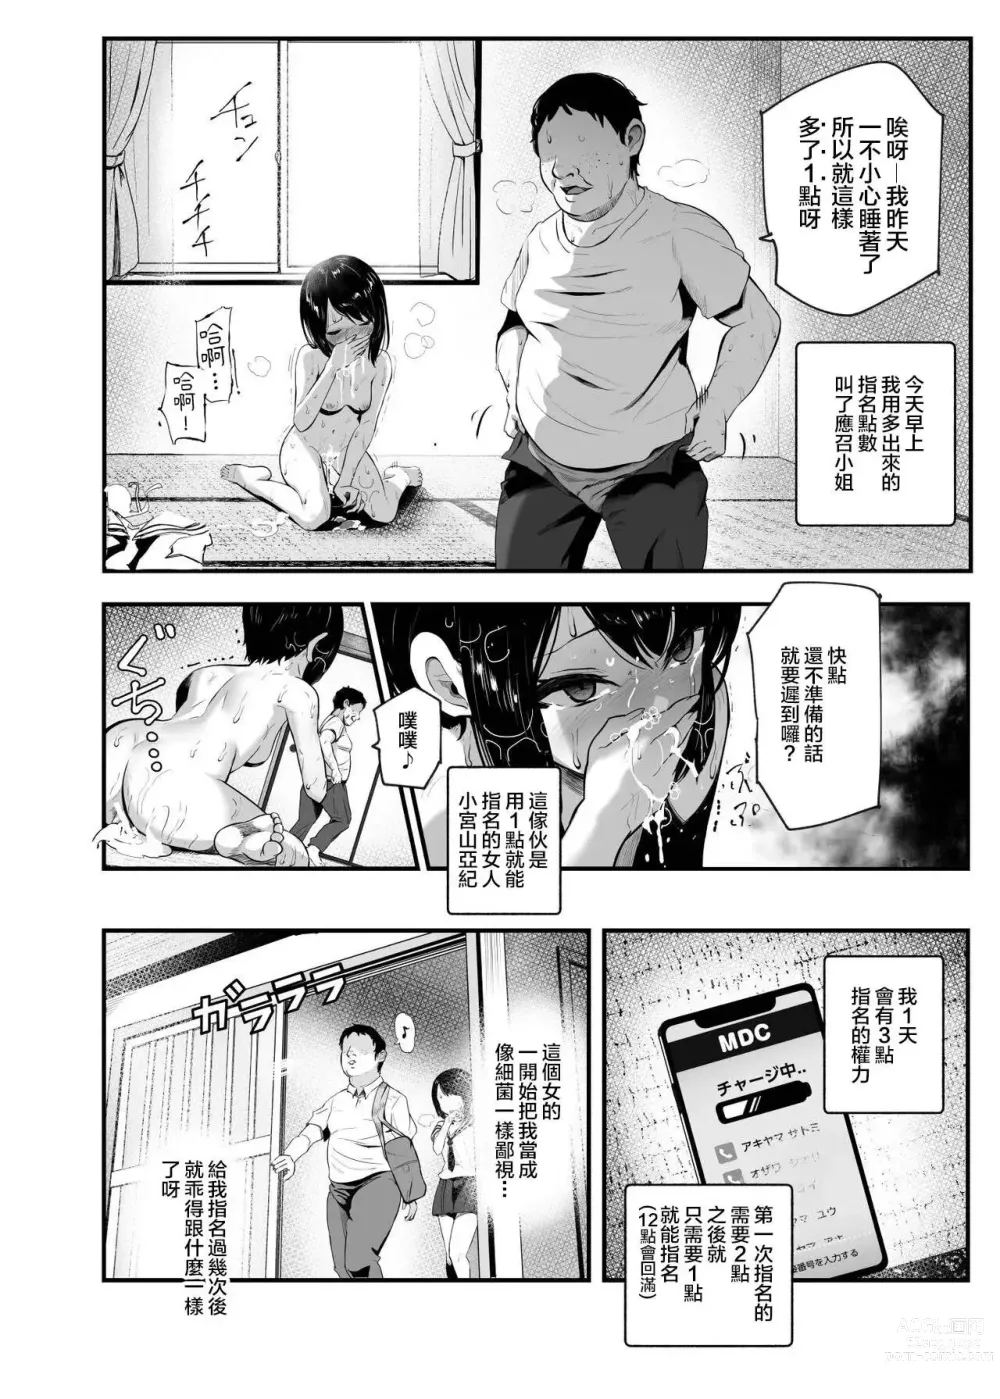 Page 6 of doujinshi 假如是應召小姐EX2 讓把我當傻瓜的女人當應召小姐就算哭著求我也繼續指名她